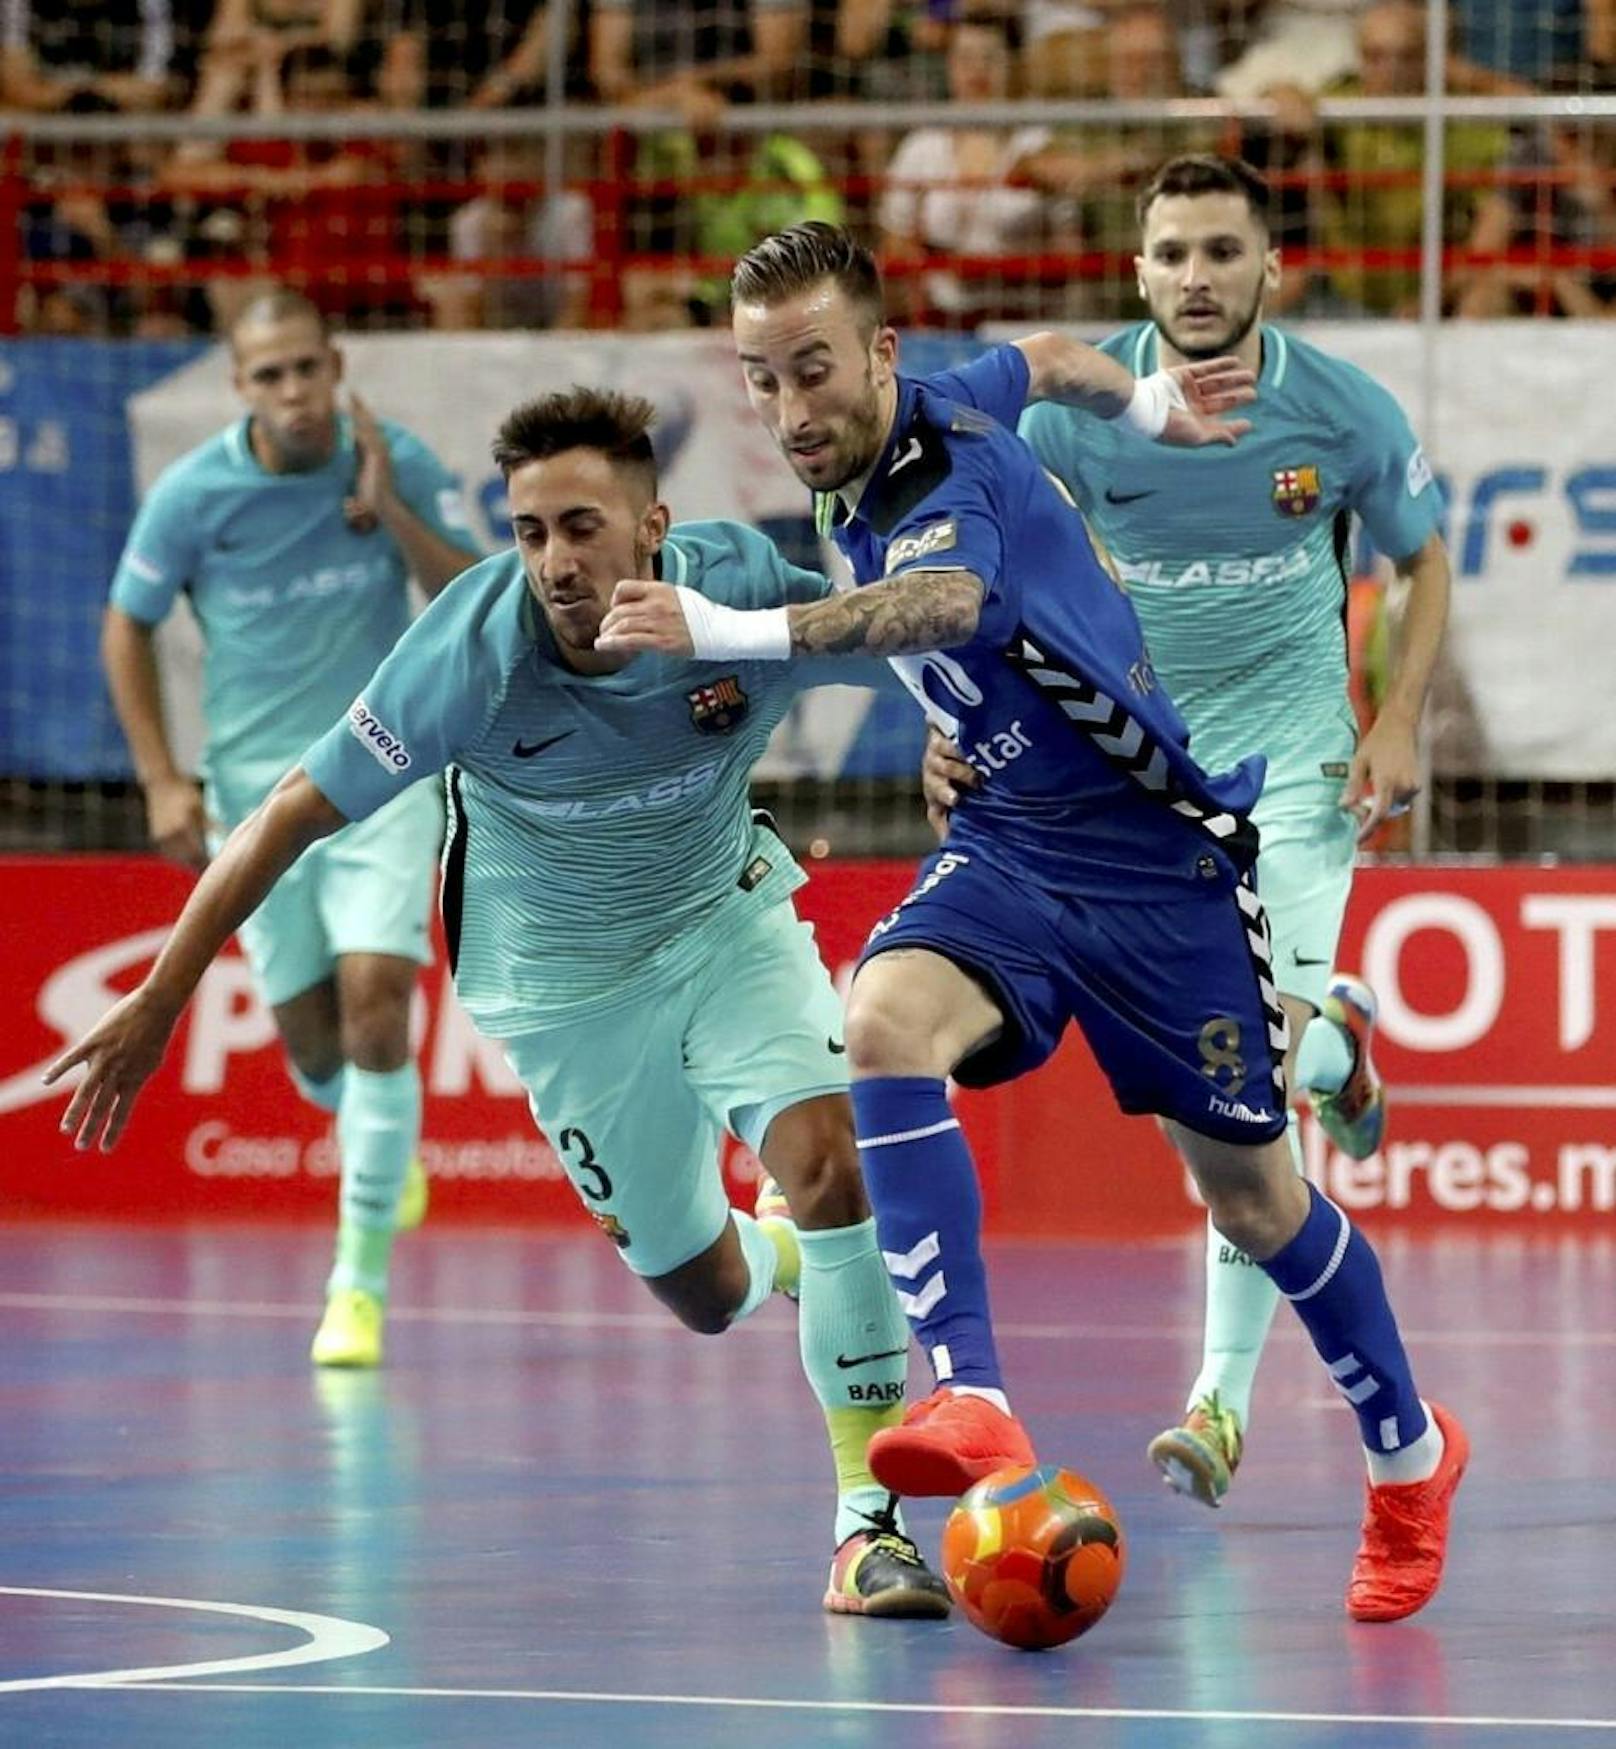 Nicht nur am grünen Rasen, auch in der Halle kann Barcelona kicken. Das Futsal-Team ist Spitzenreiter.